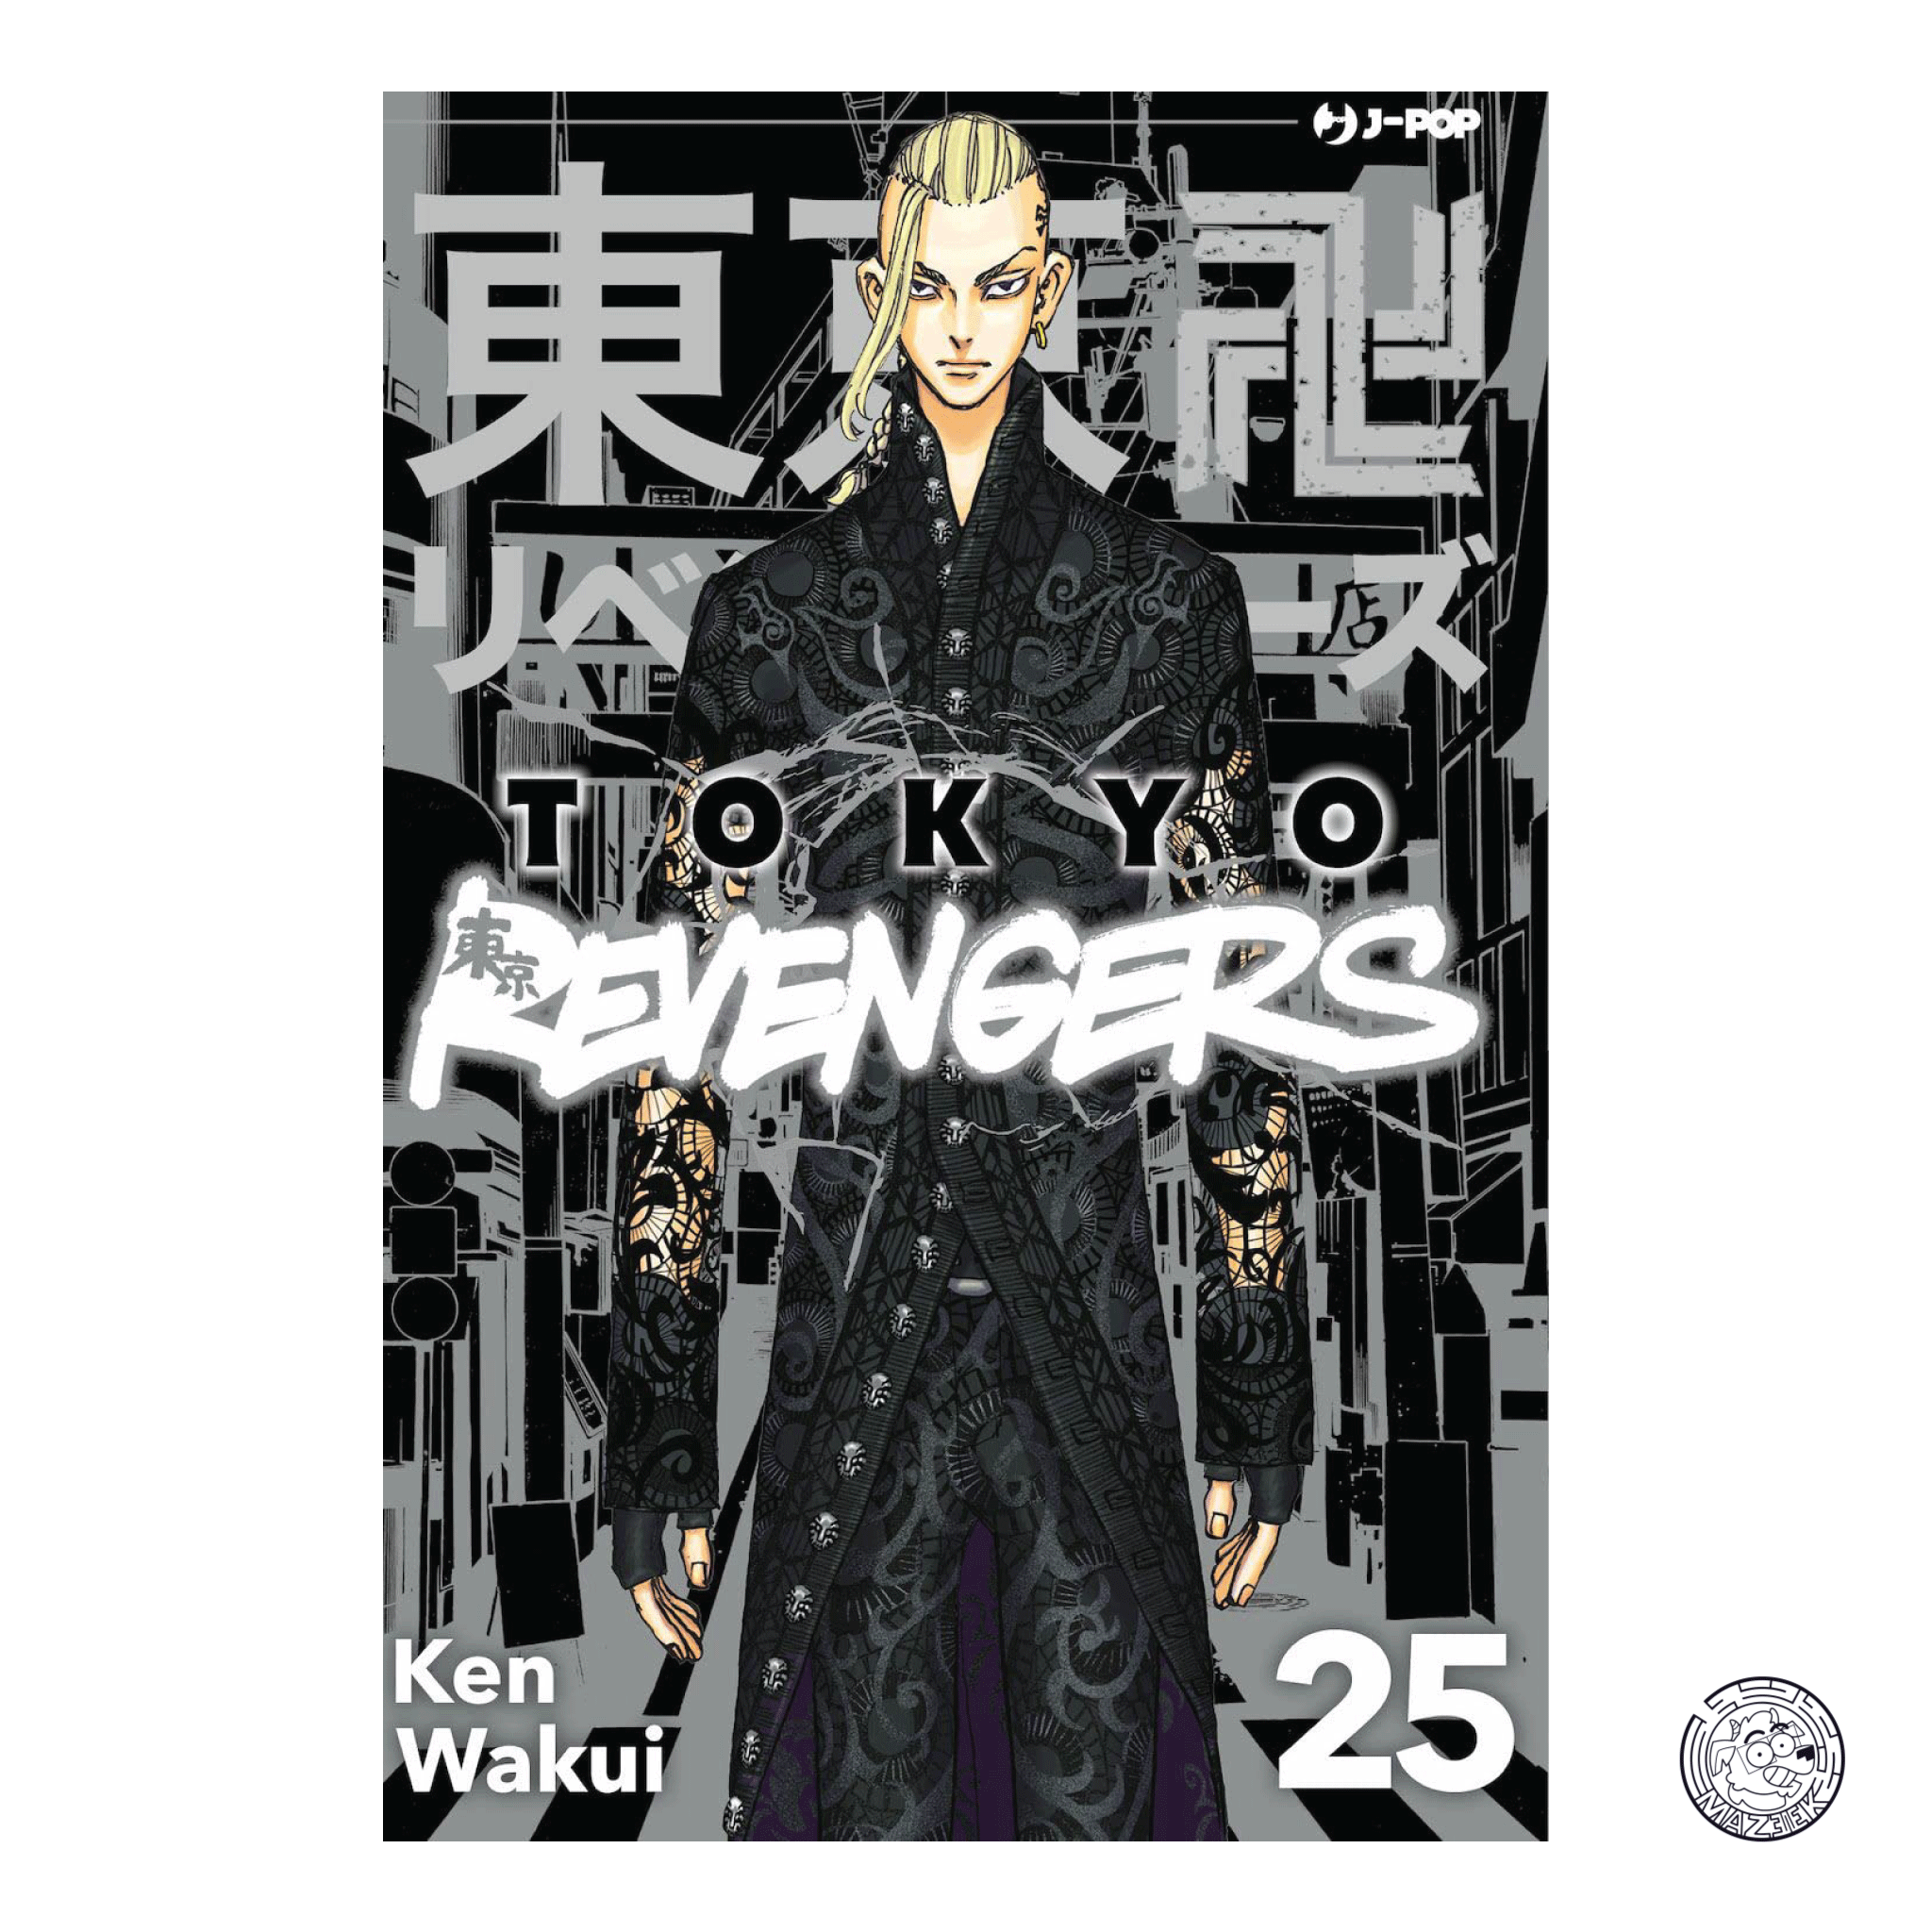 Tokyo Revengers 25